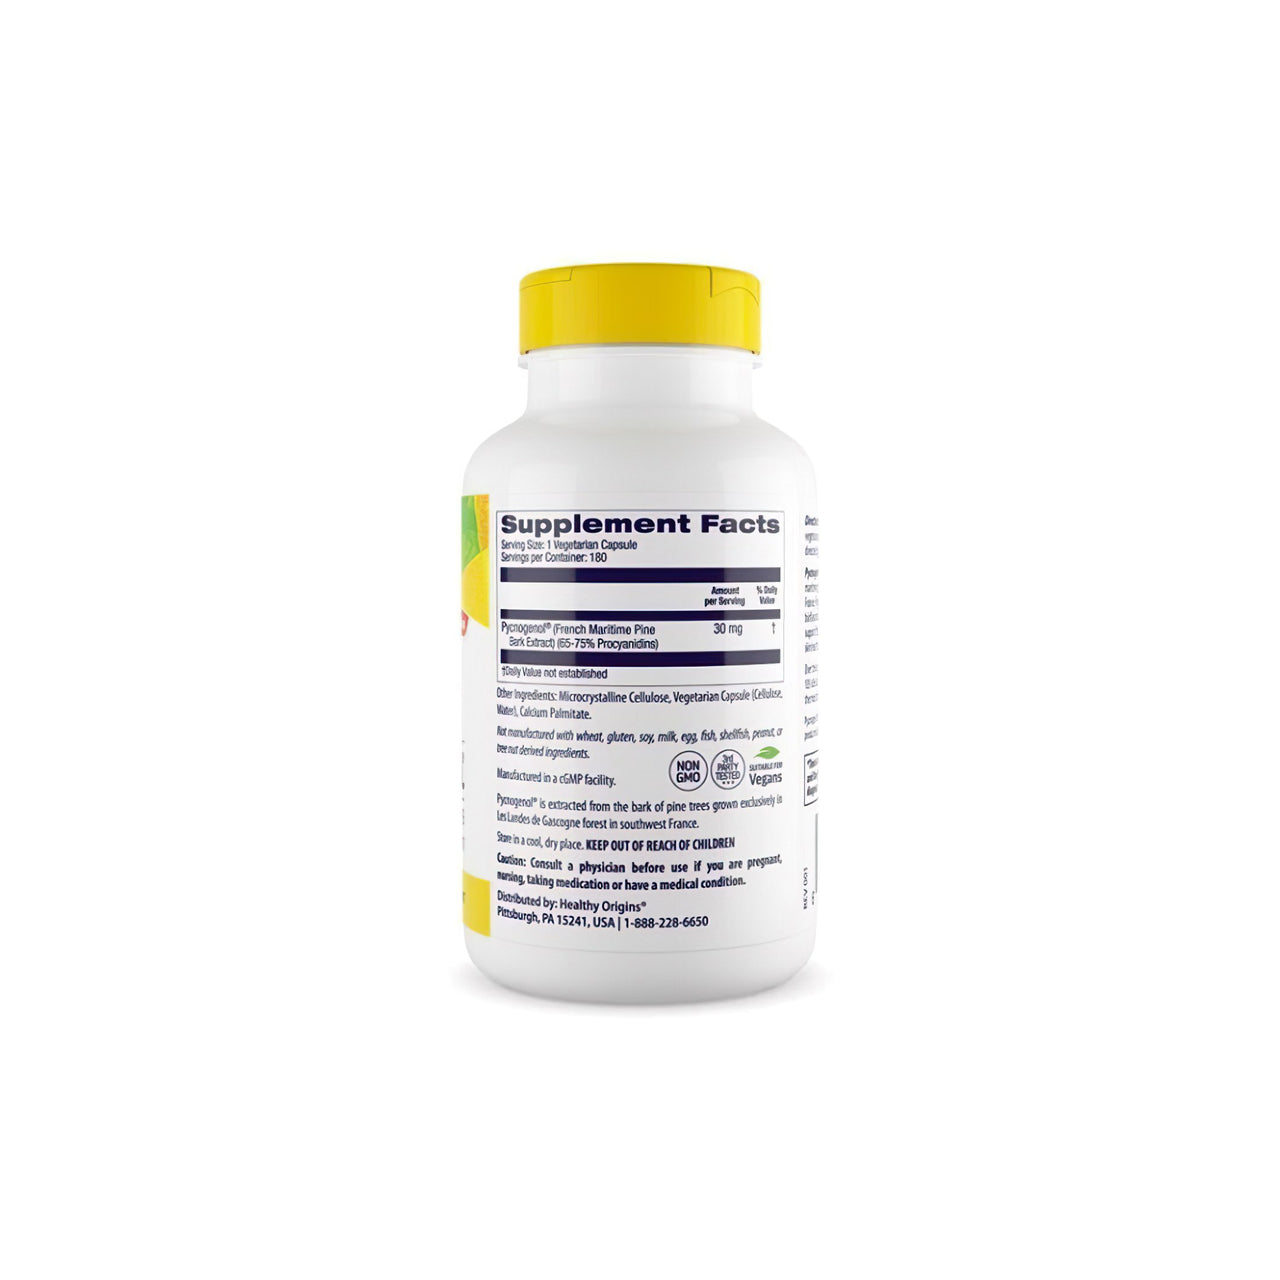 Une bouteille de complément alimentaire de Pycnogenol 30 mg 180 gélules végétales, un puissant antioxydant pour la santé cardiovasculaire, présenté sur un fond blanc propre, par Healthy Origins.